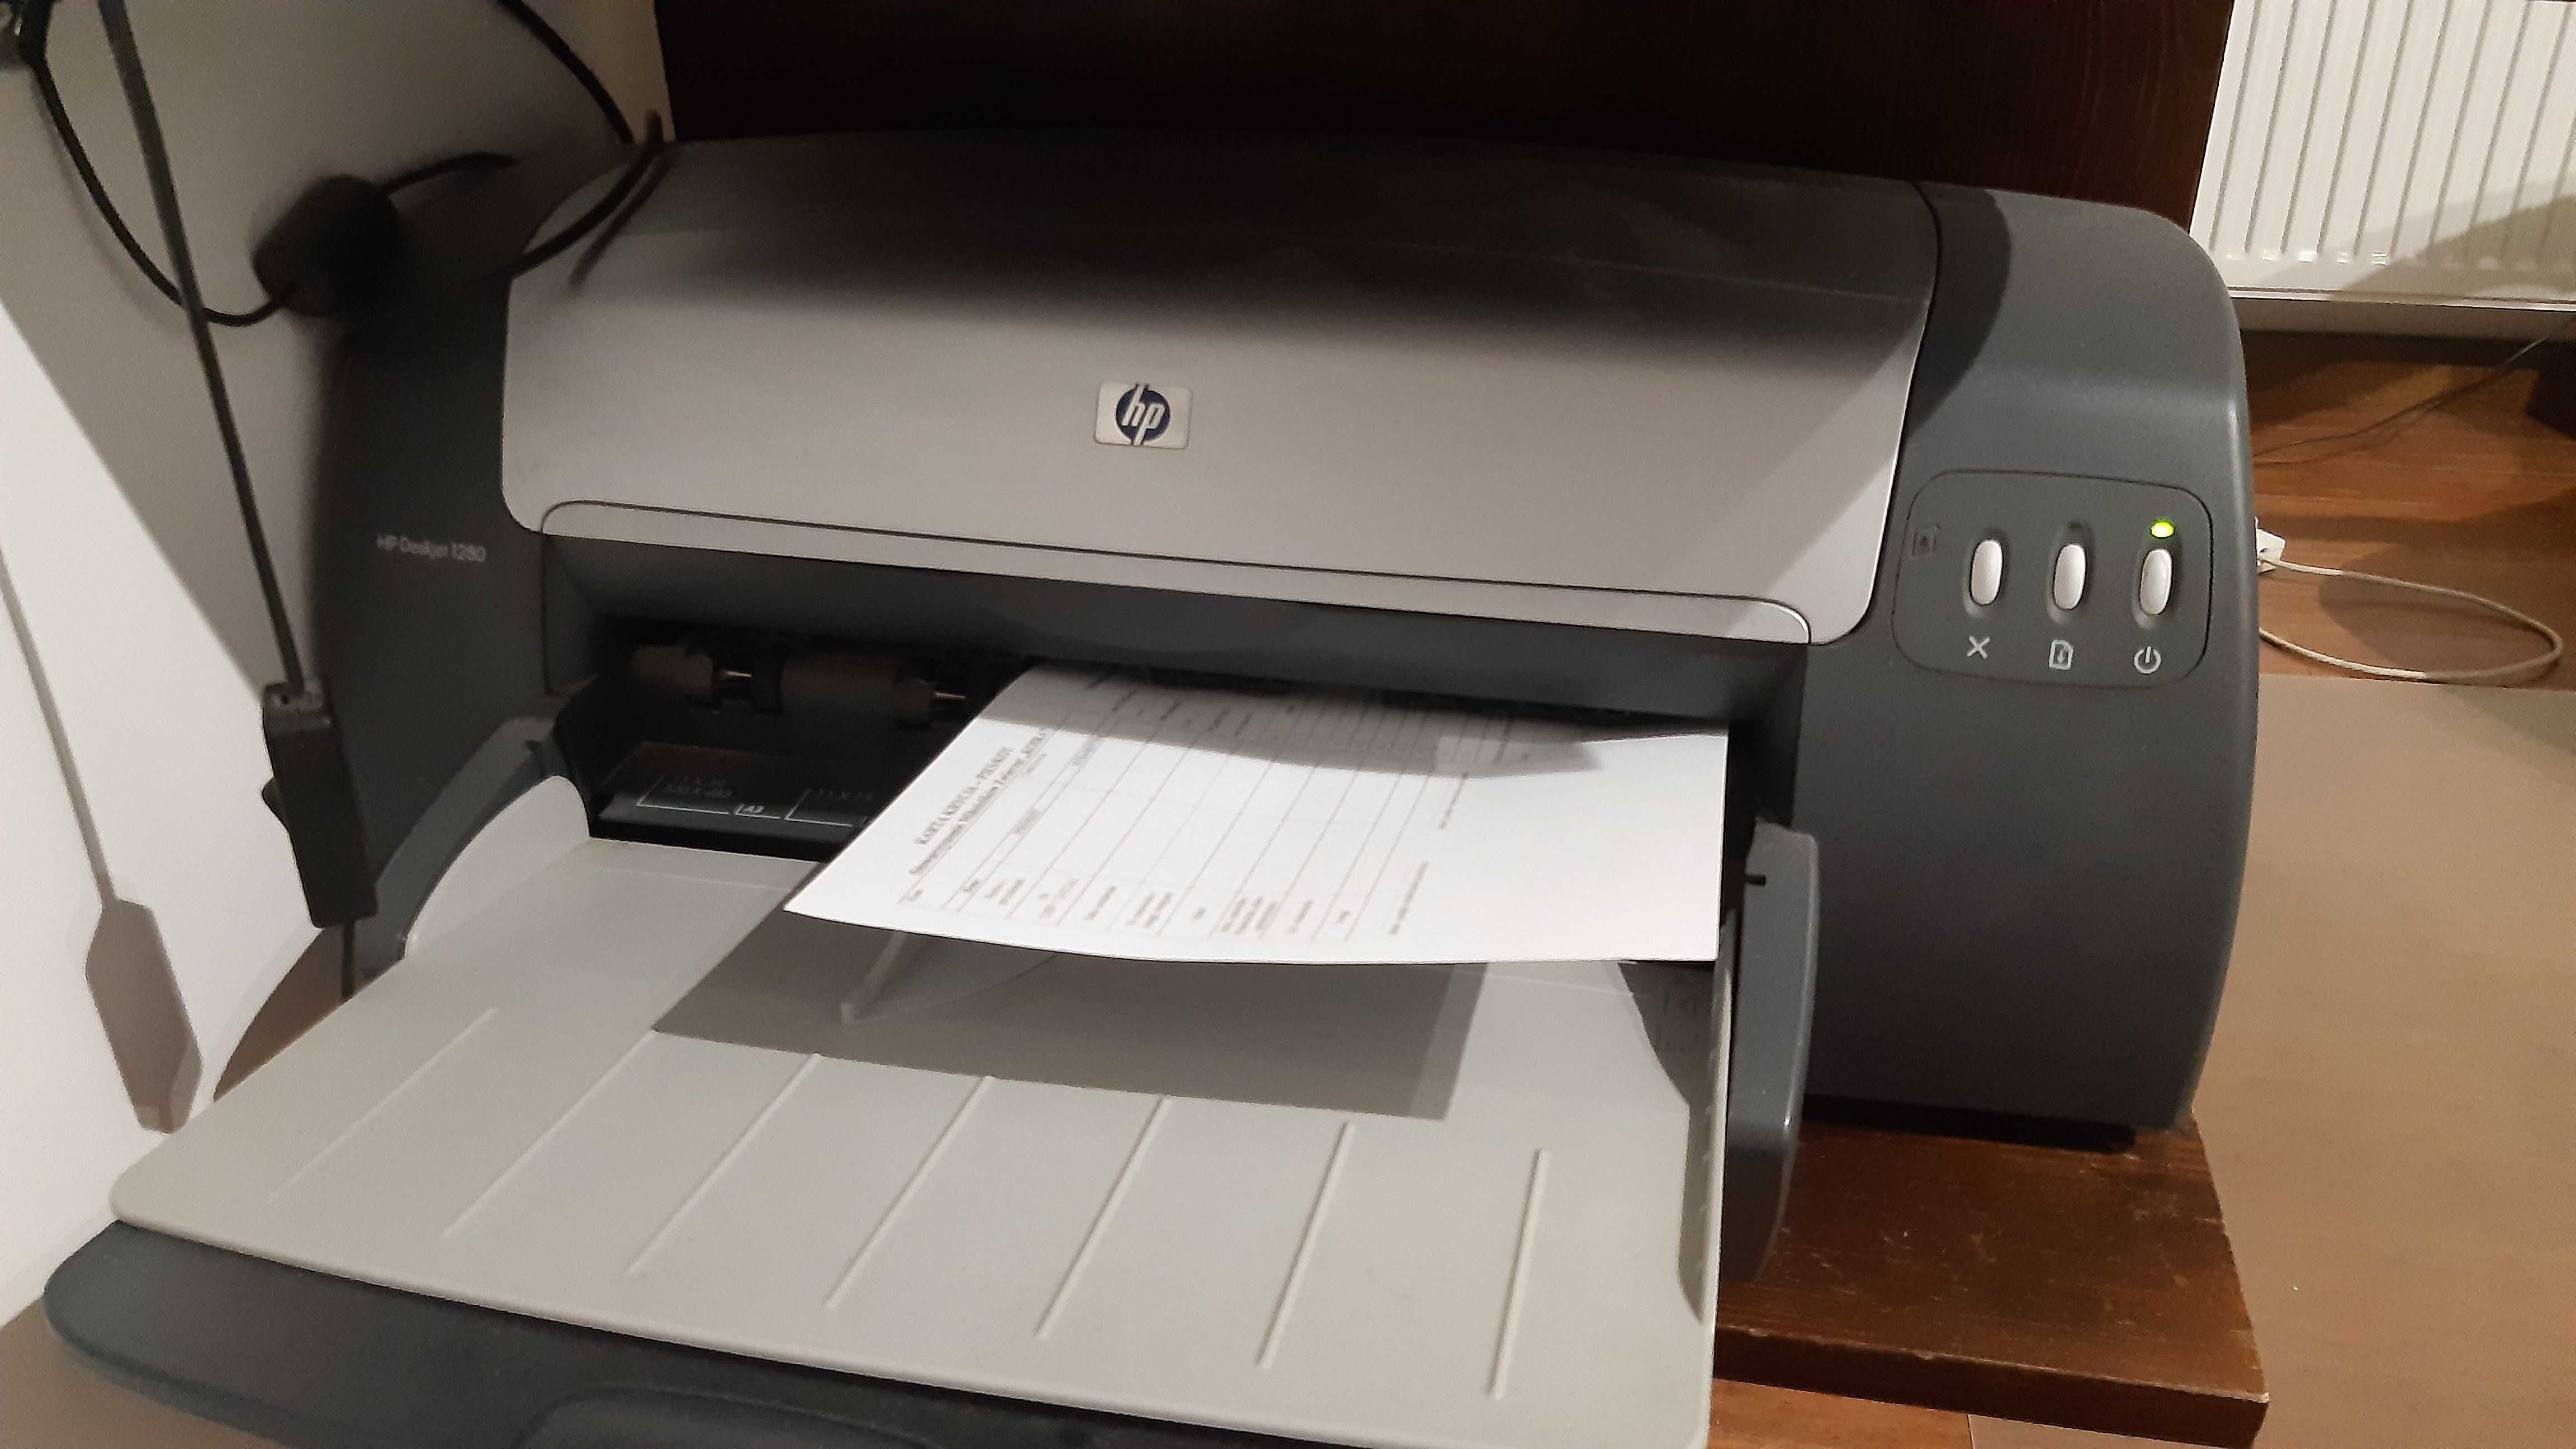 Sprzedam/zamienię drukarkę HP Deskjet 1280 - druk format A3+